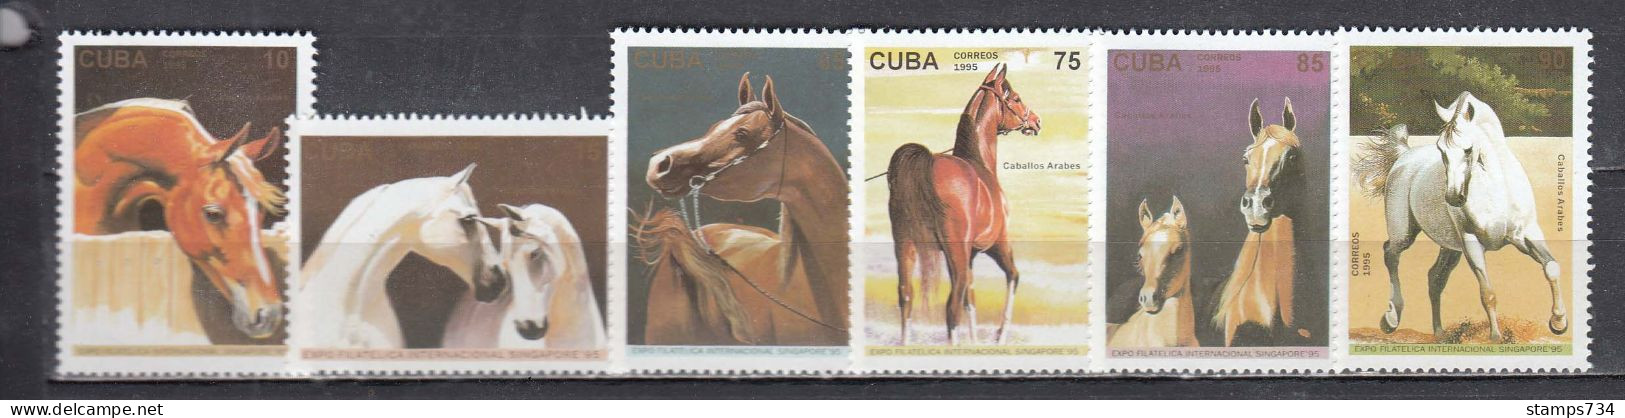 Cuba 1995 - Horses, Mi-nr. 3835/40, MNH** - Nuevos